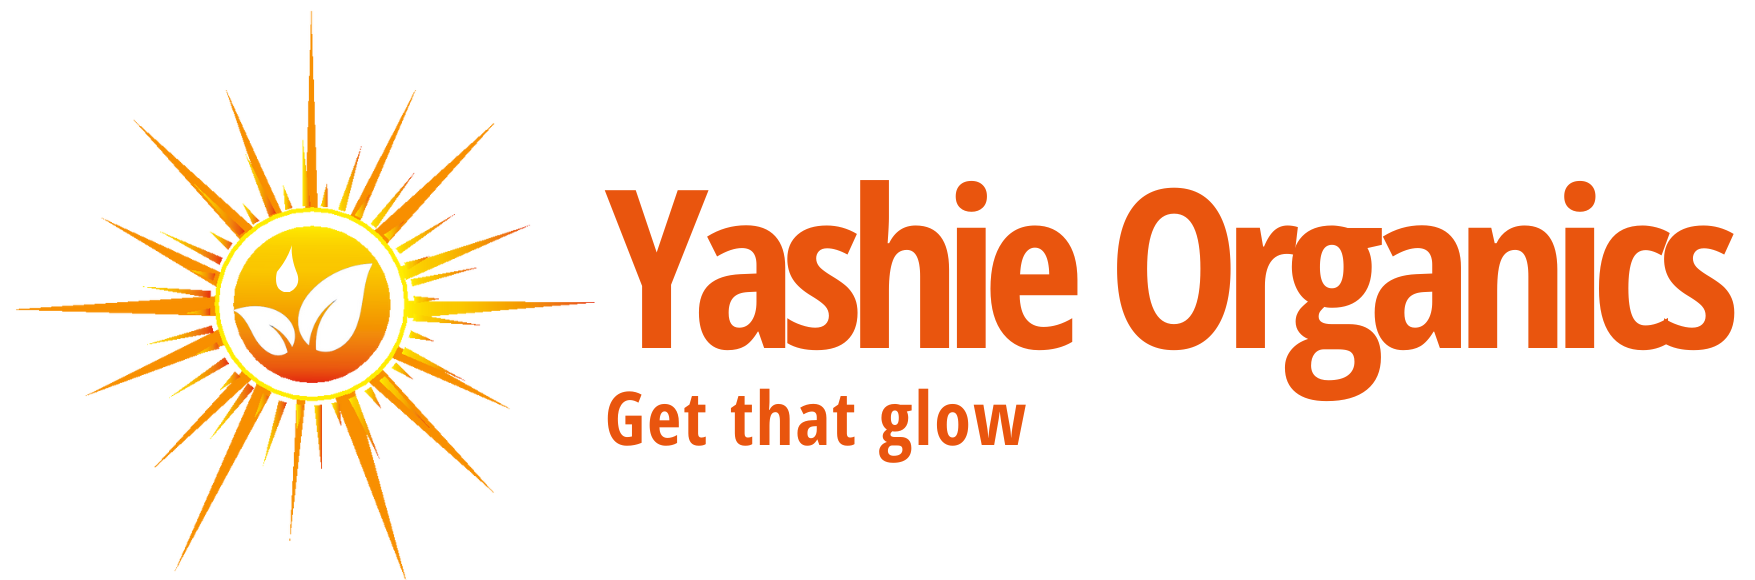 Yashie Organics